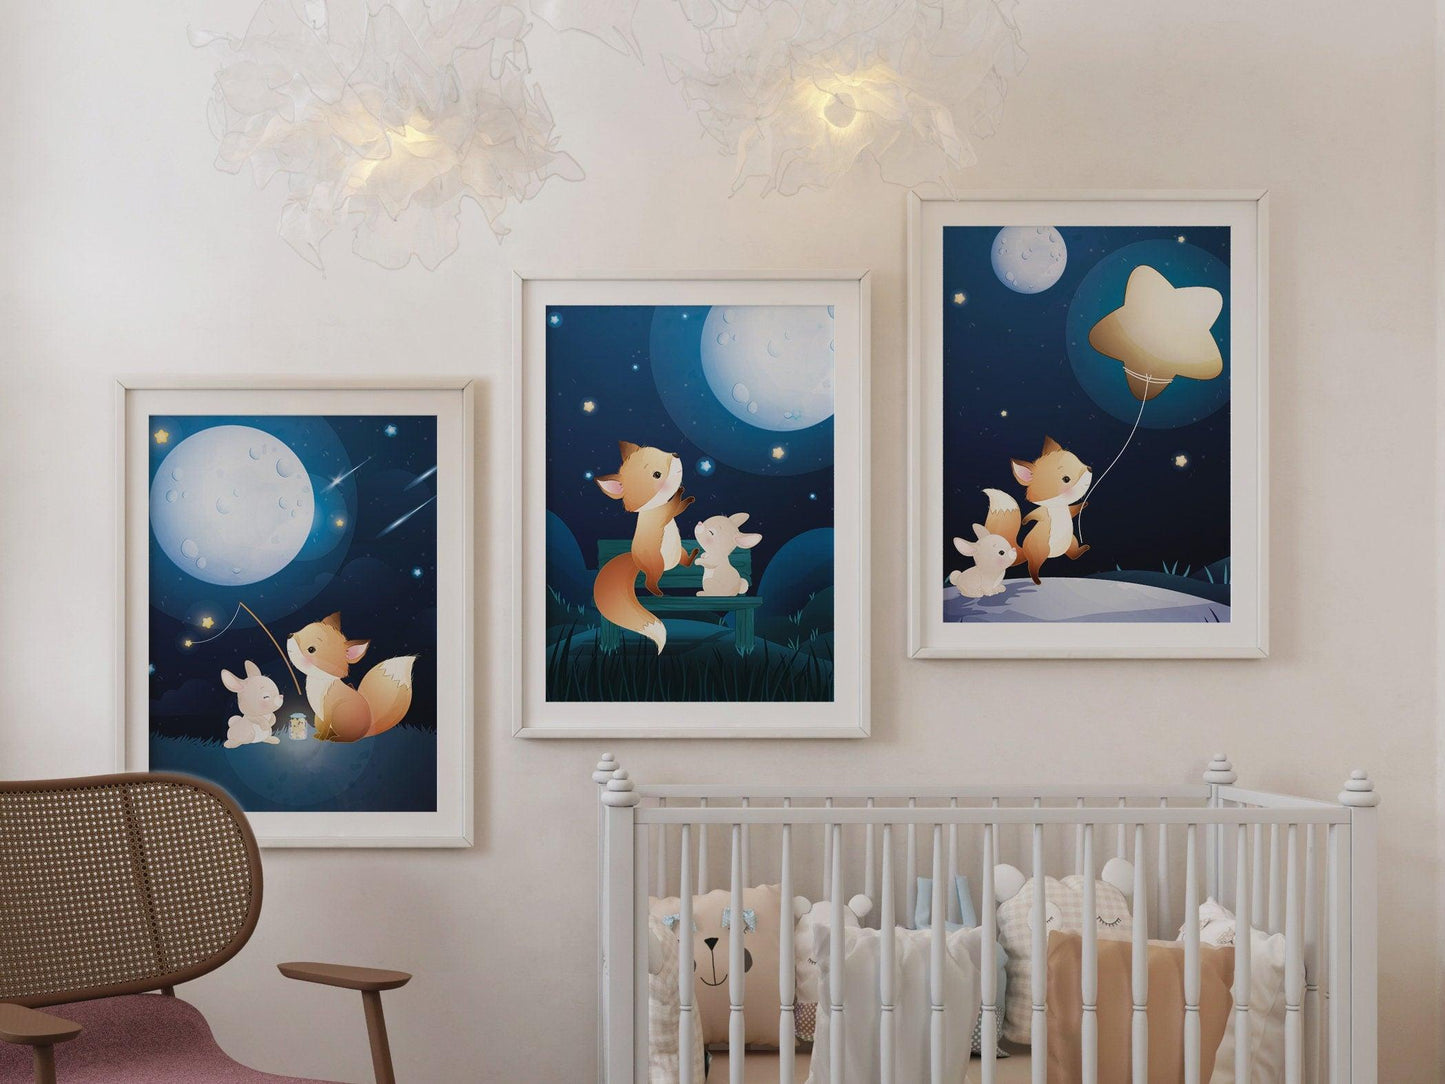 Affiches Renard et Lapin rêve illustration - chambre enfant bébé - Décoration enfant - Idée cadeau - Thème animaux - format A4 ou A3 - Imagine.affiche